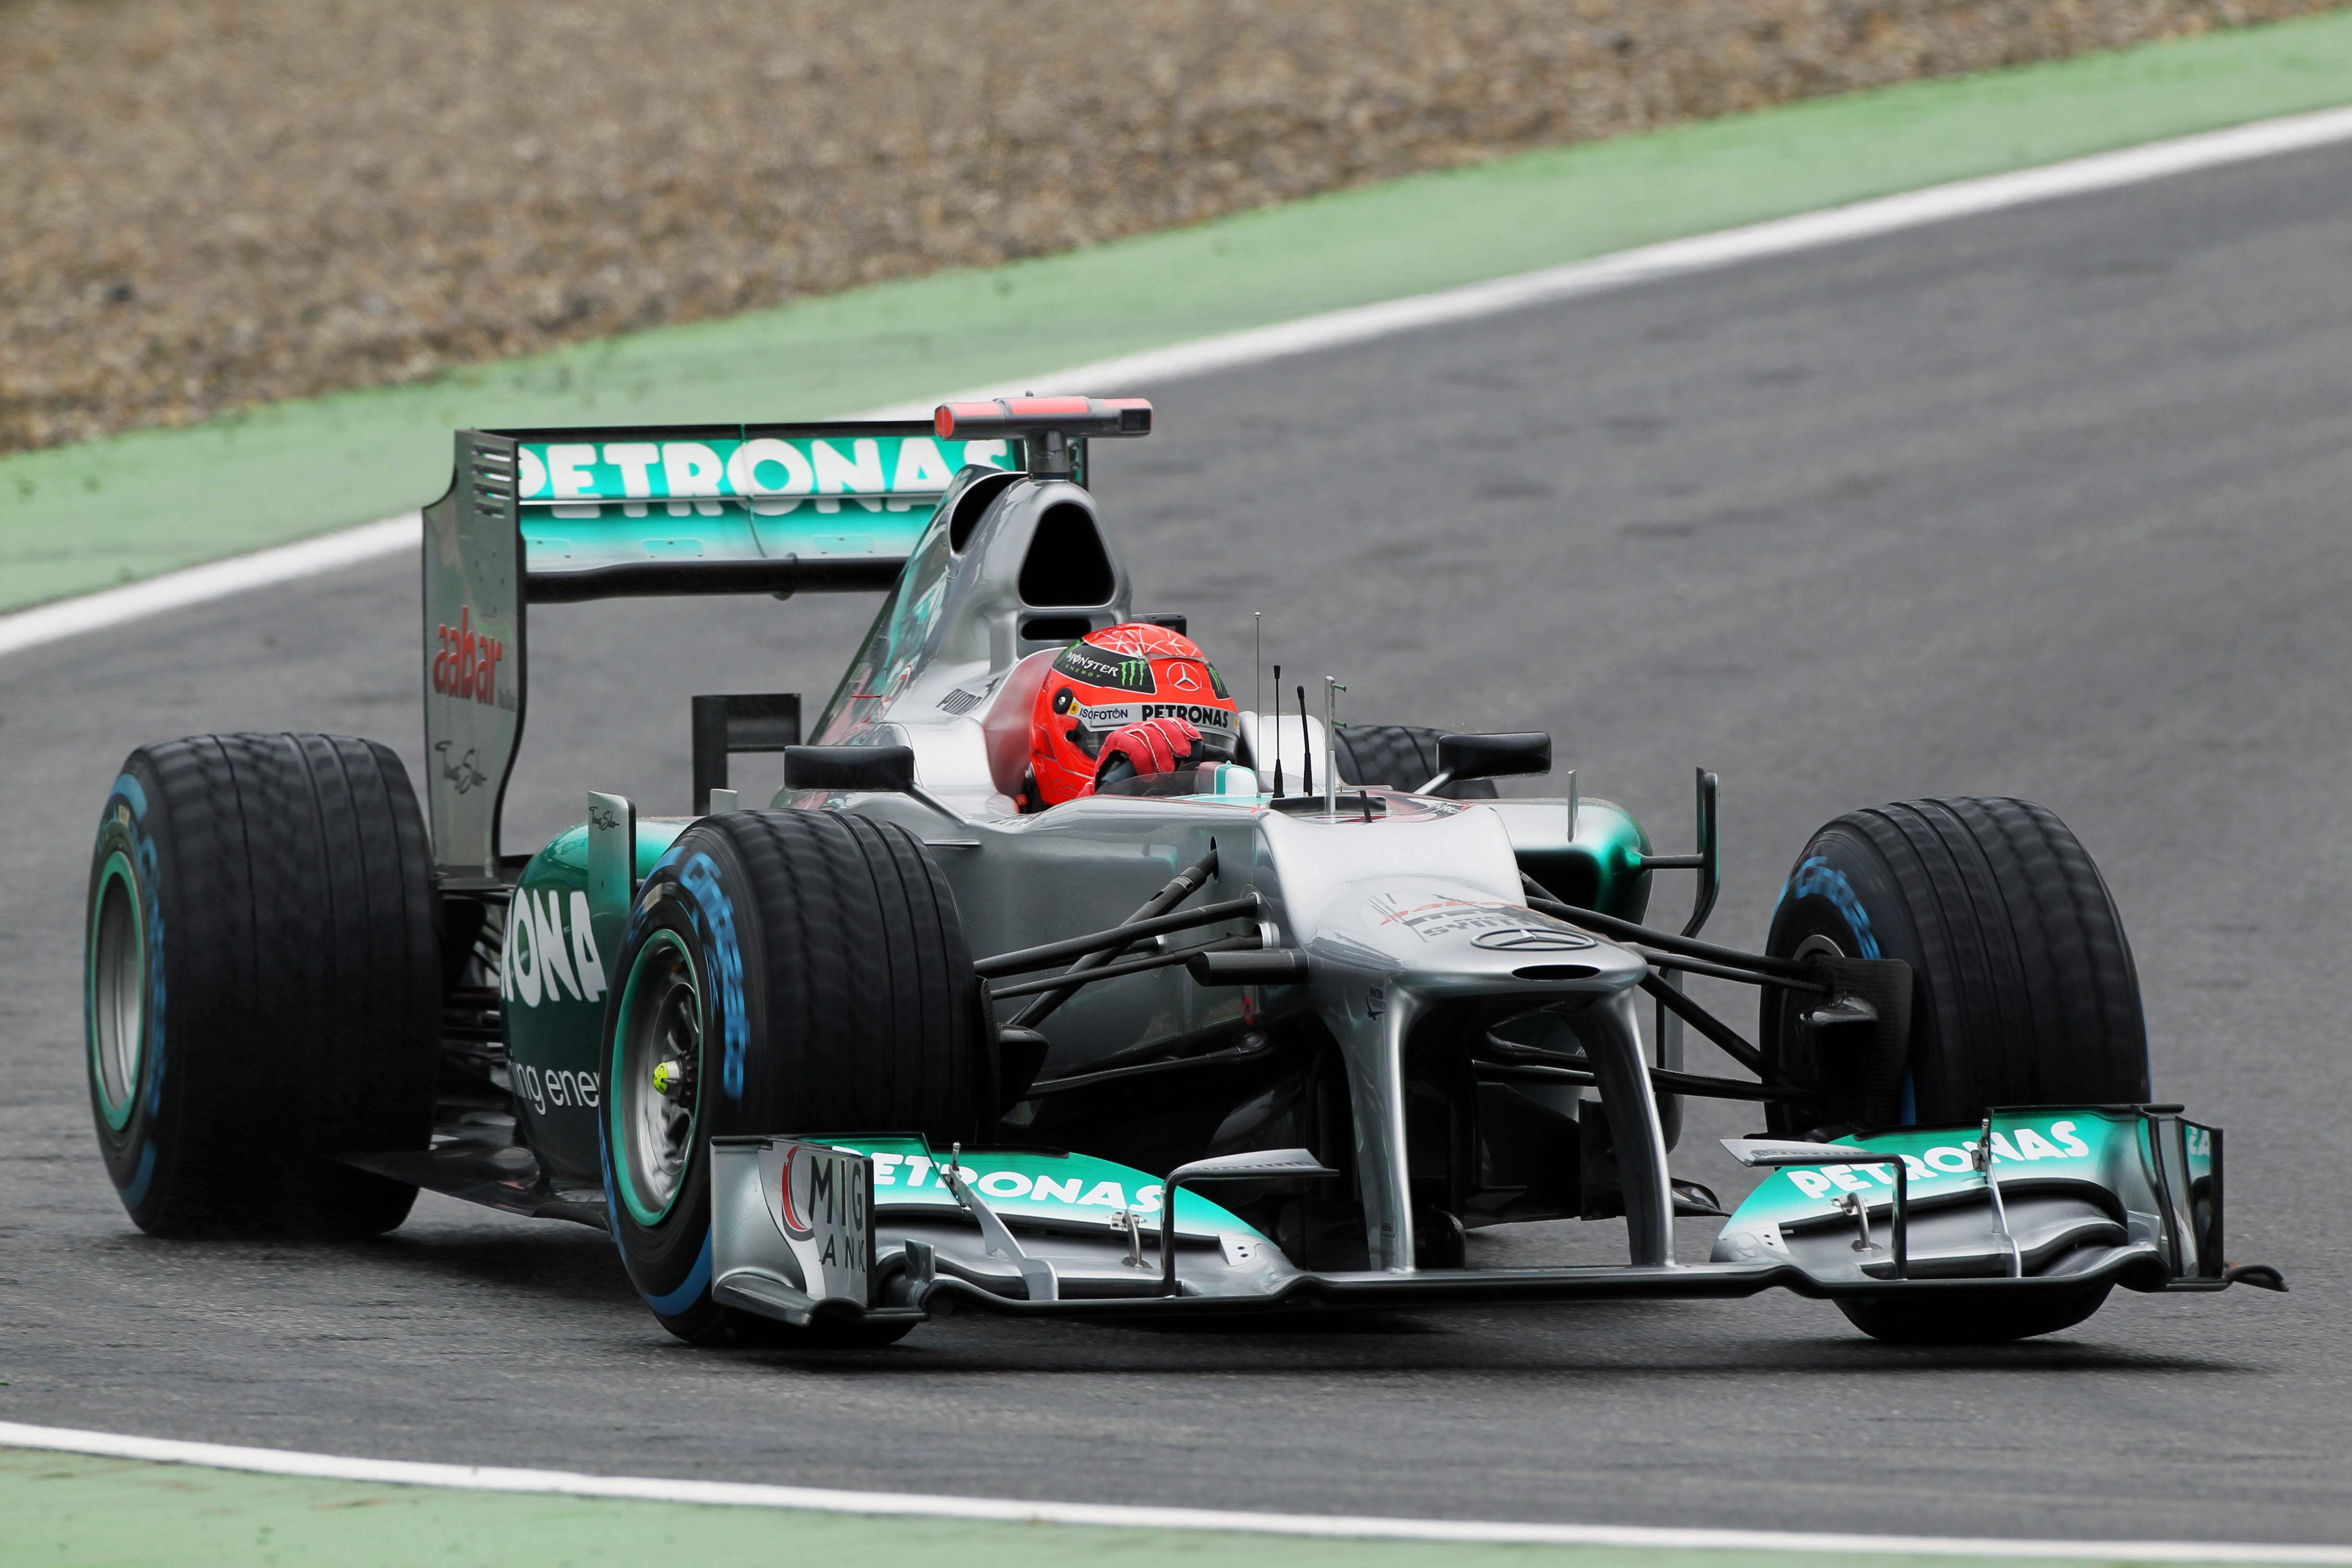 Schumacher was niet geconcentreerd bij crash